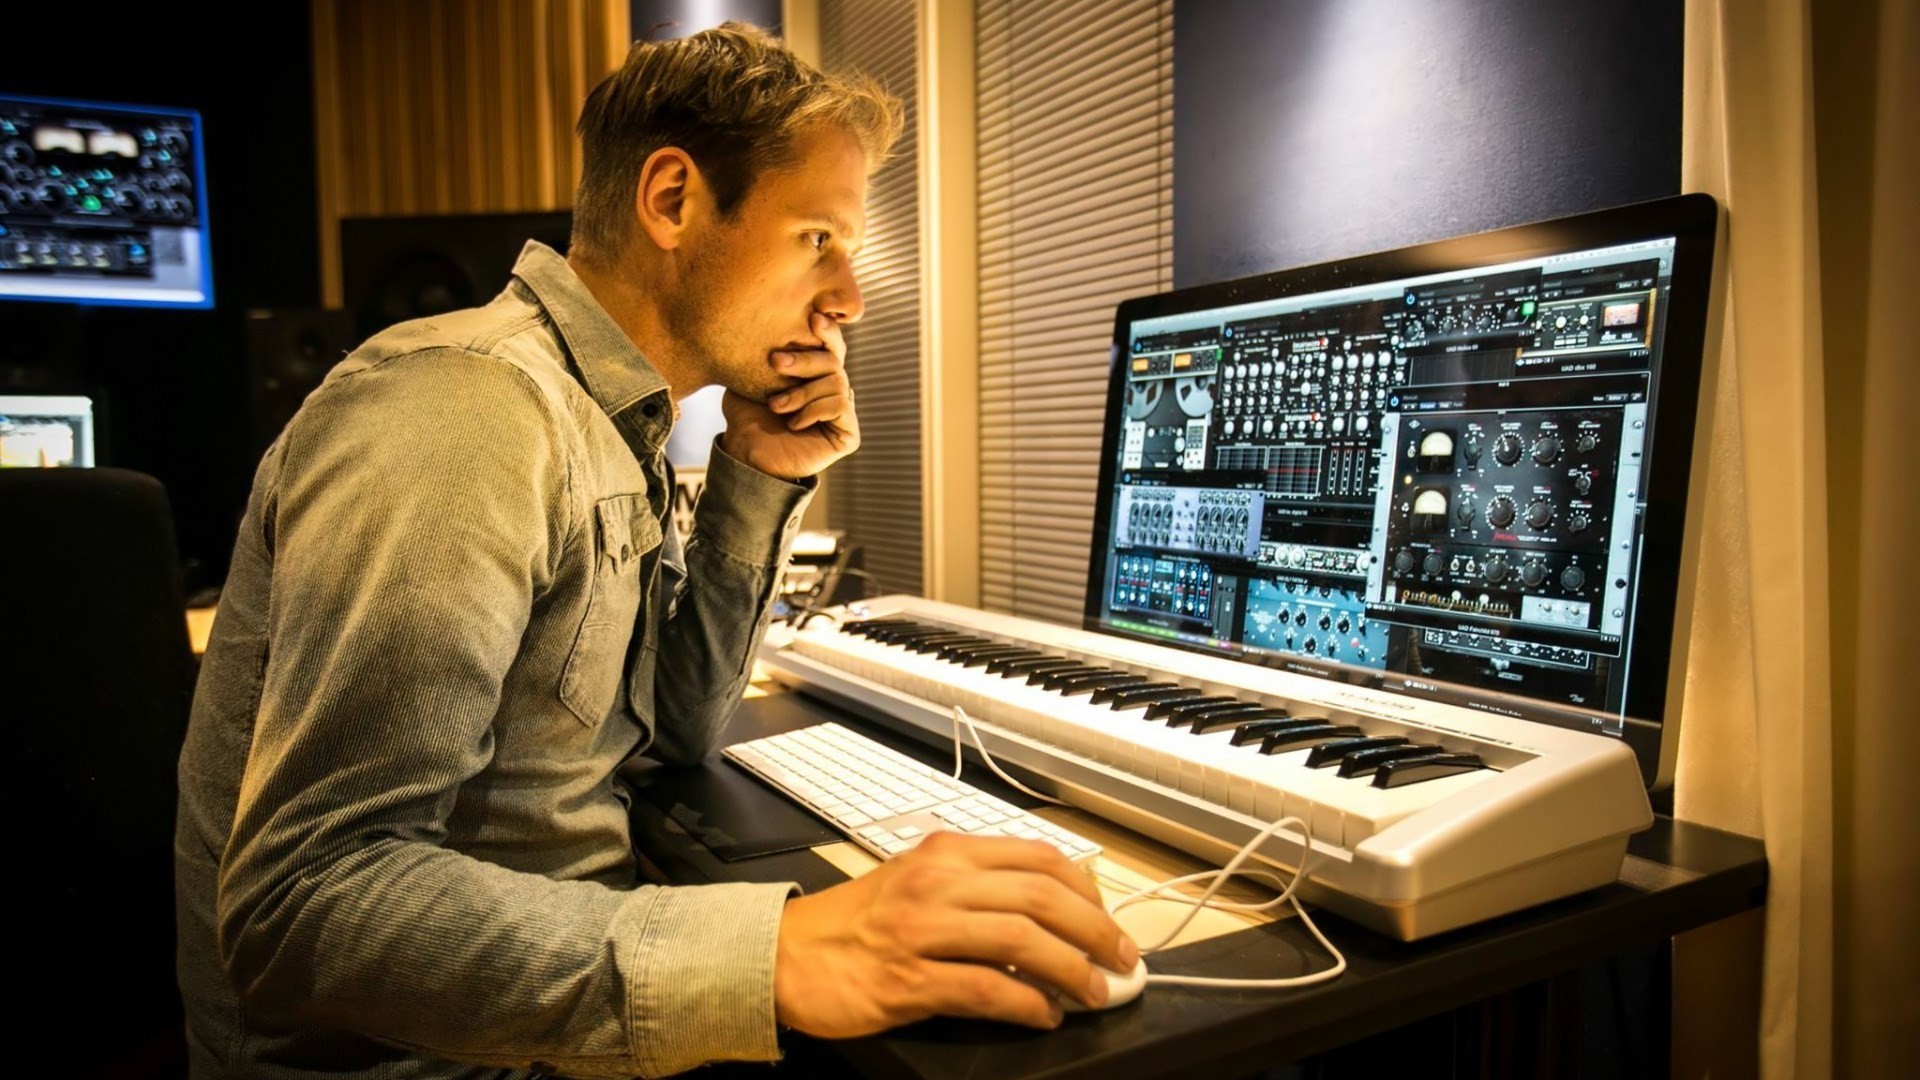 Прослушивание качественная музыка. Студия Армина Ван Бюрена. Armin van Buuren в студии. Армин музыкант. Студия композитора.